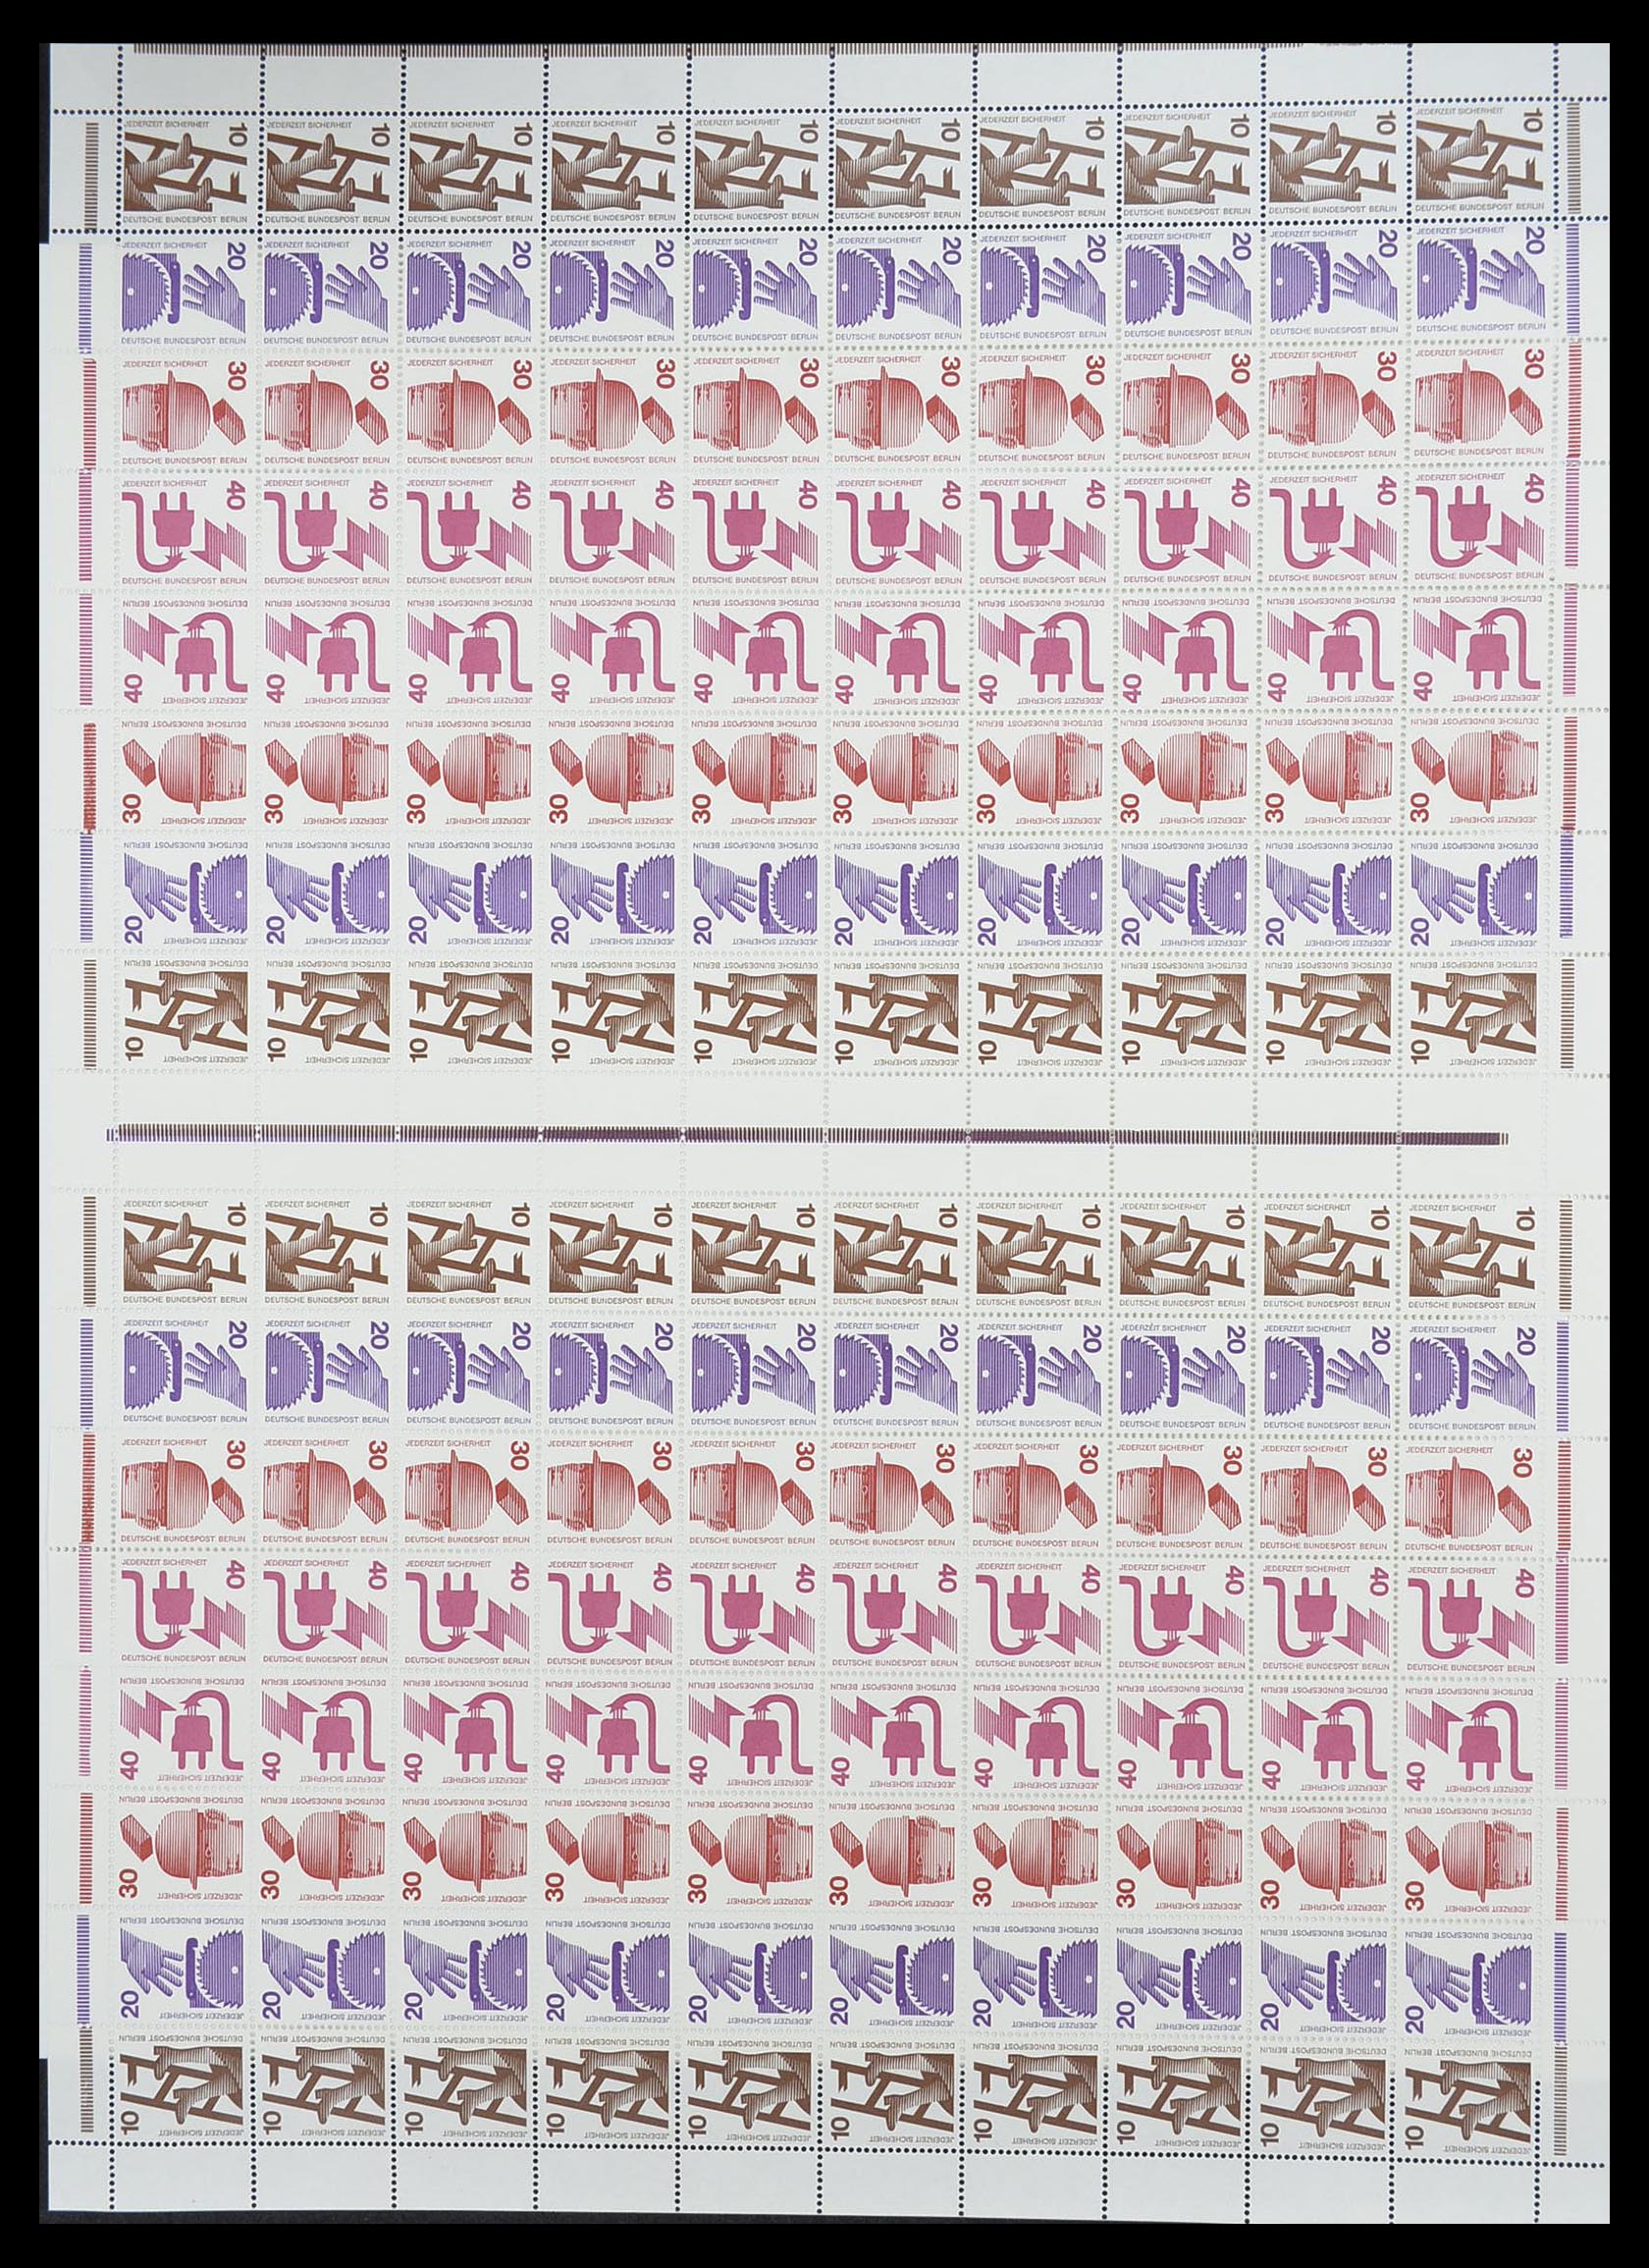 33753 005 - Postzegelverzameling 33753 Bund en Berlijn markenheftchenbogen 1966-1